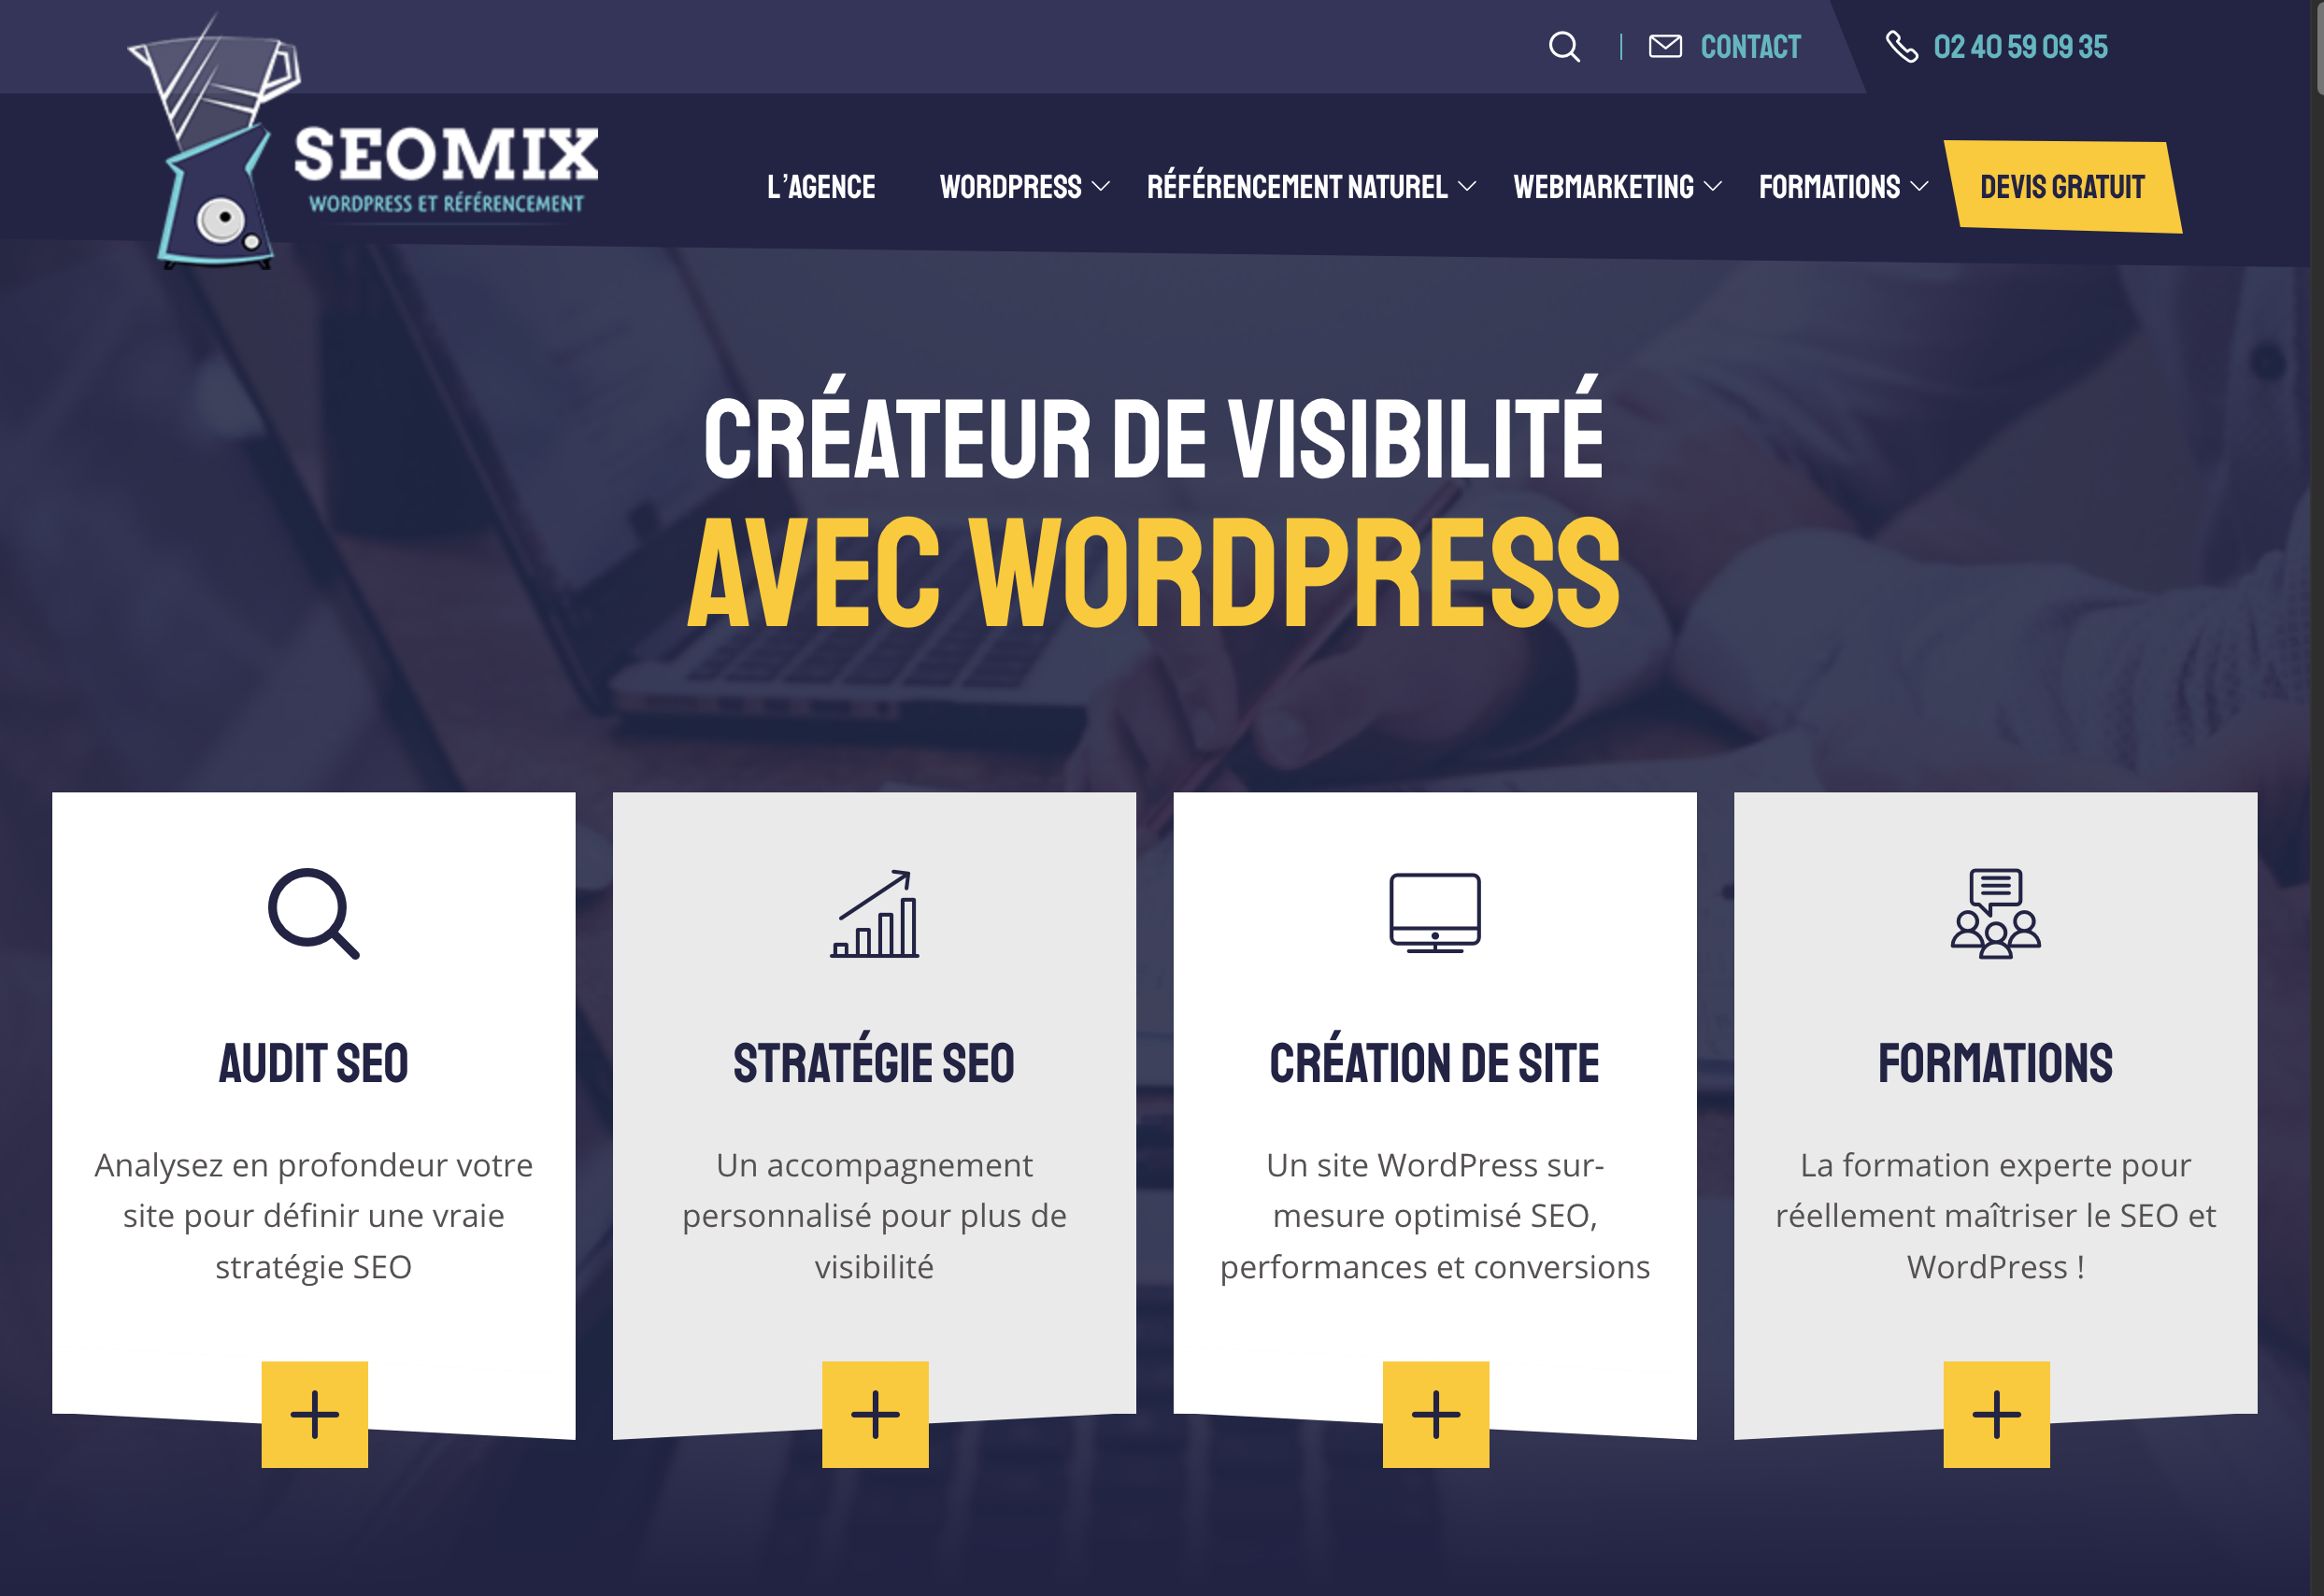 SeoMix est spécialiste du SEO sur le CMS WordPress.